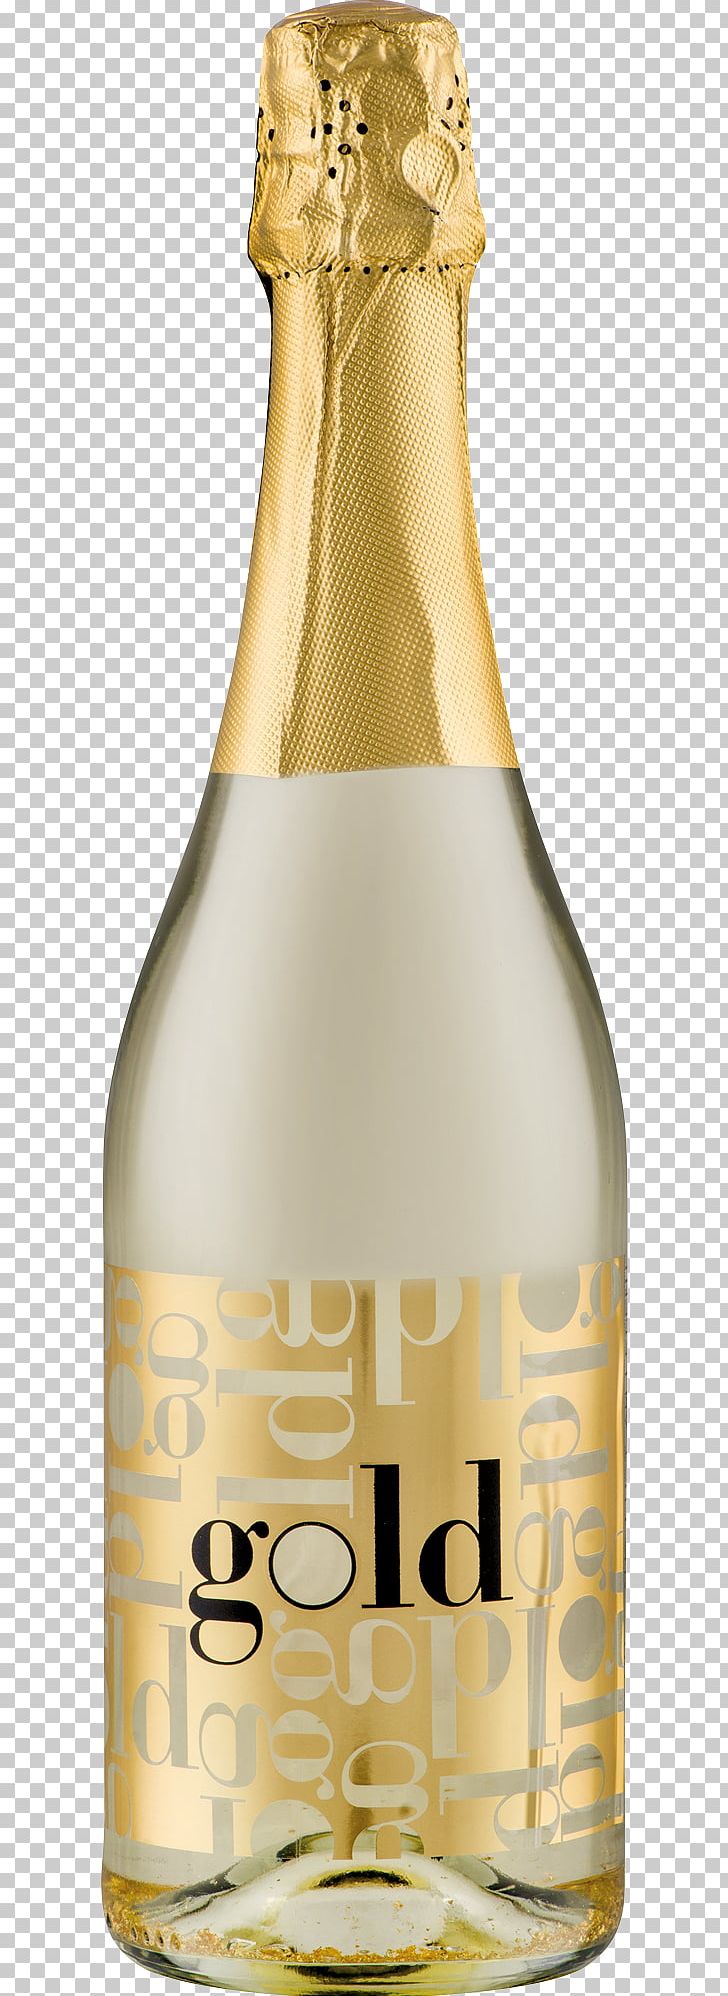 Champagne Wine Beer Bottle Liqueur Glass Bottle PNG, Clipart, Alcoholic Beverage, Barware, Beer, Beer Bottle, Bottle Free PNG Download